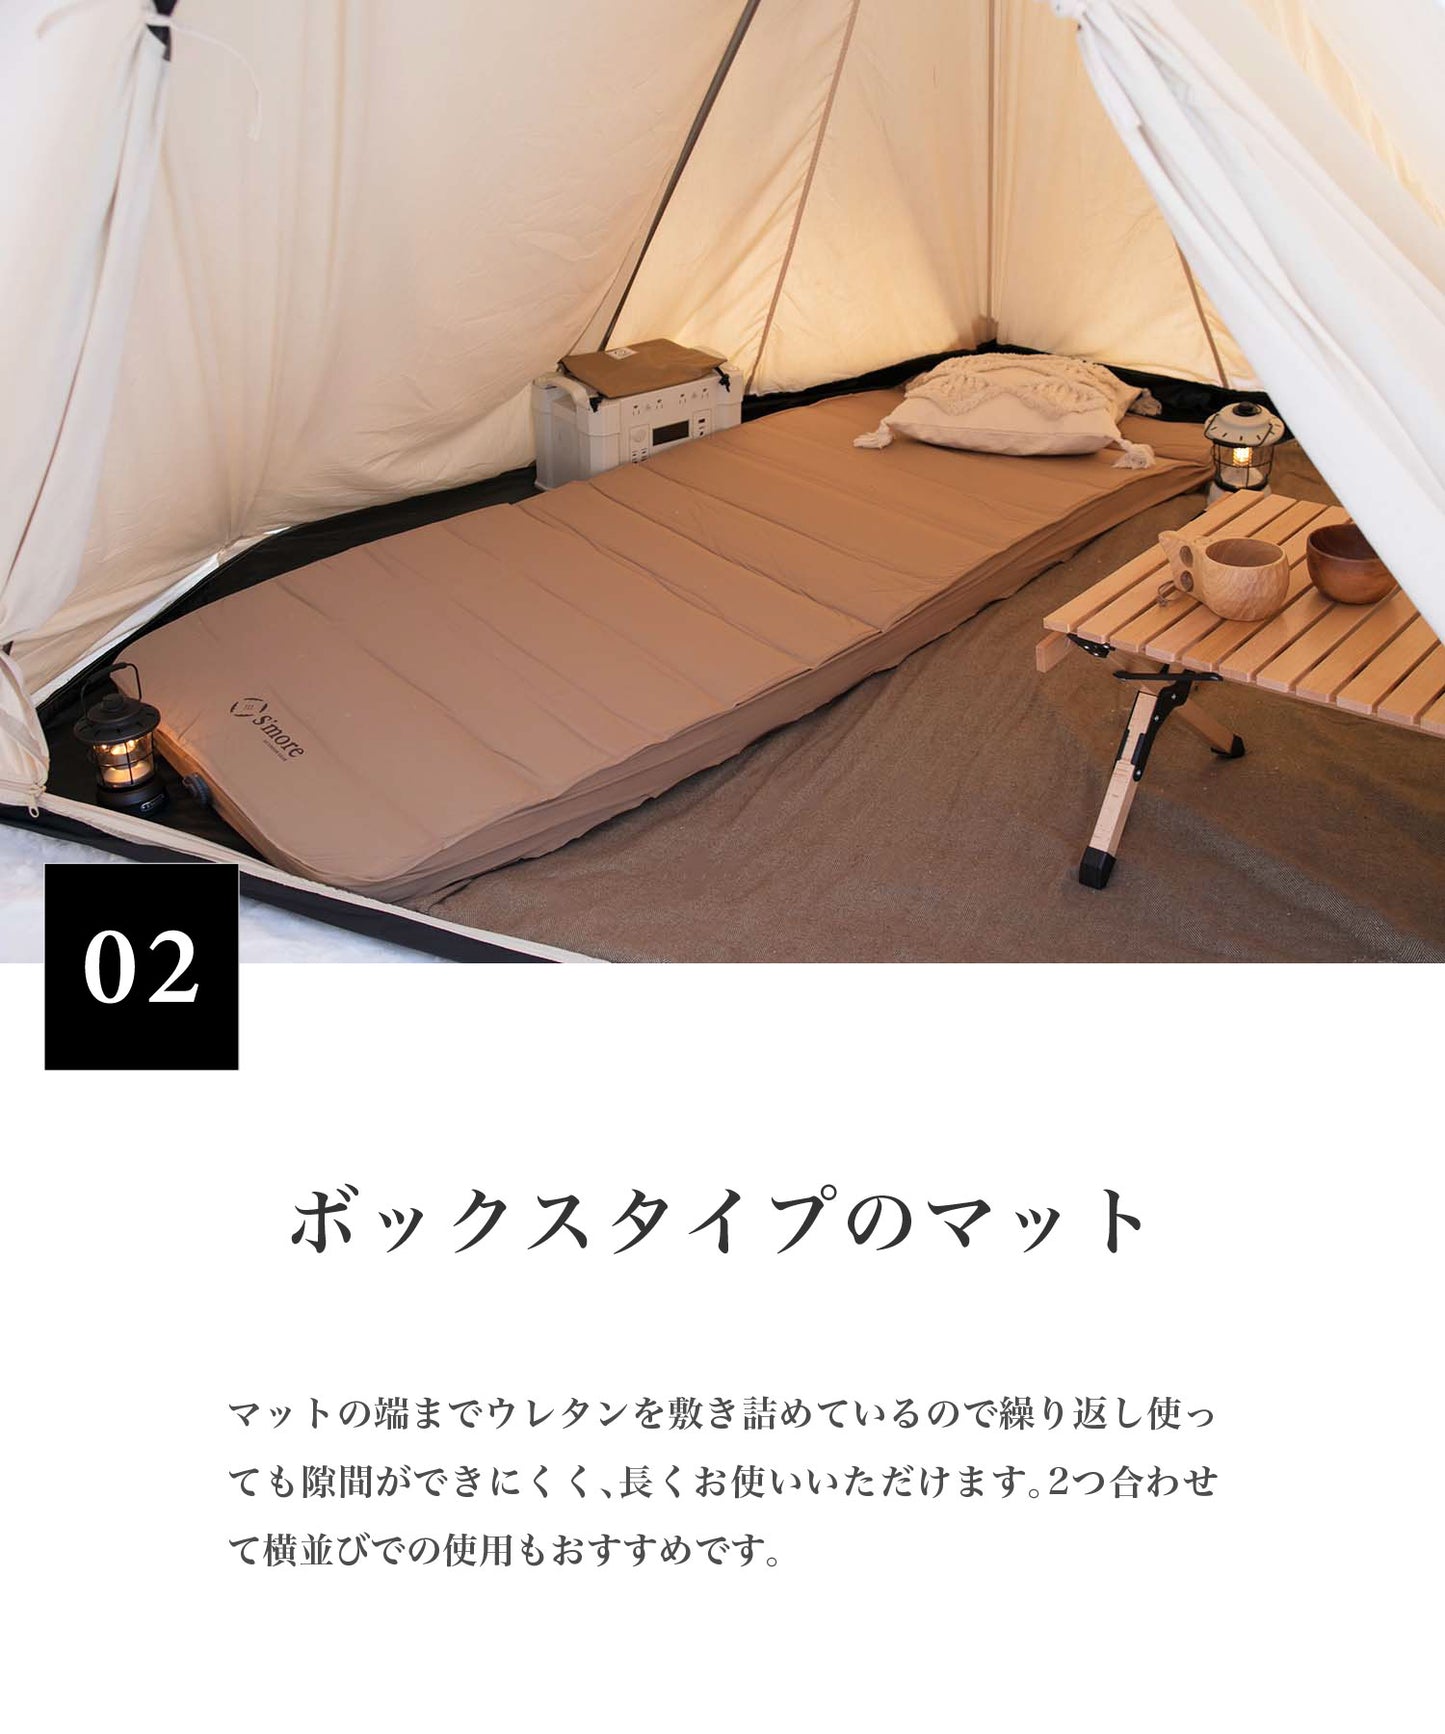 【OYASUMI MAT S】シングルサイズのの折り畳み可能なキャンプ用マット